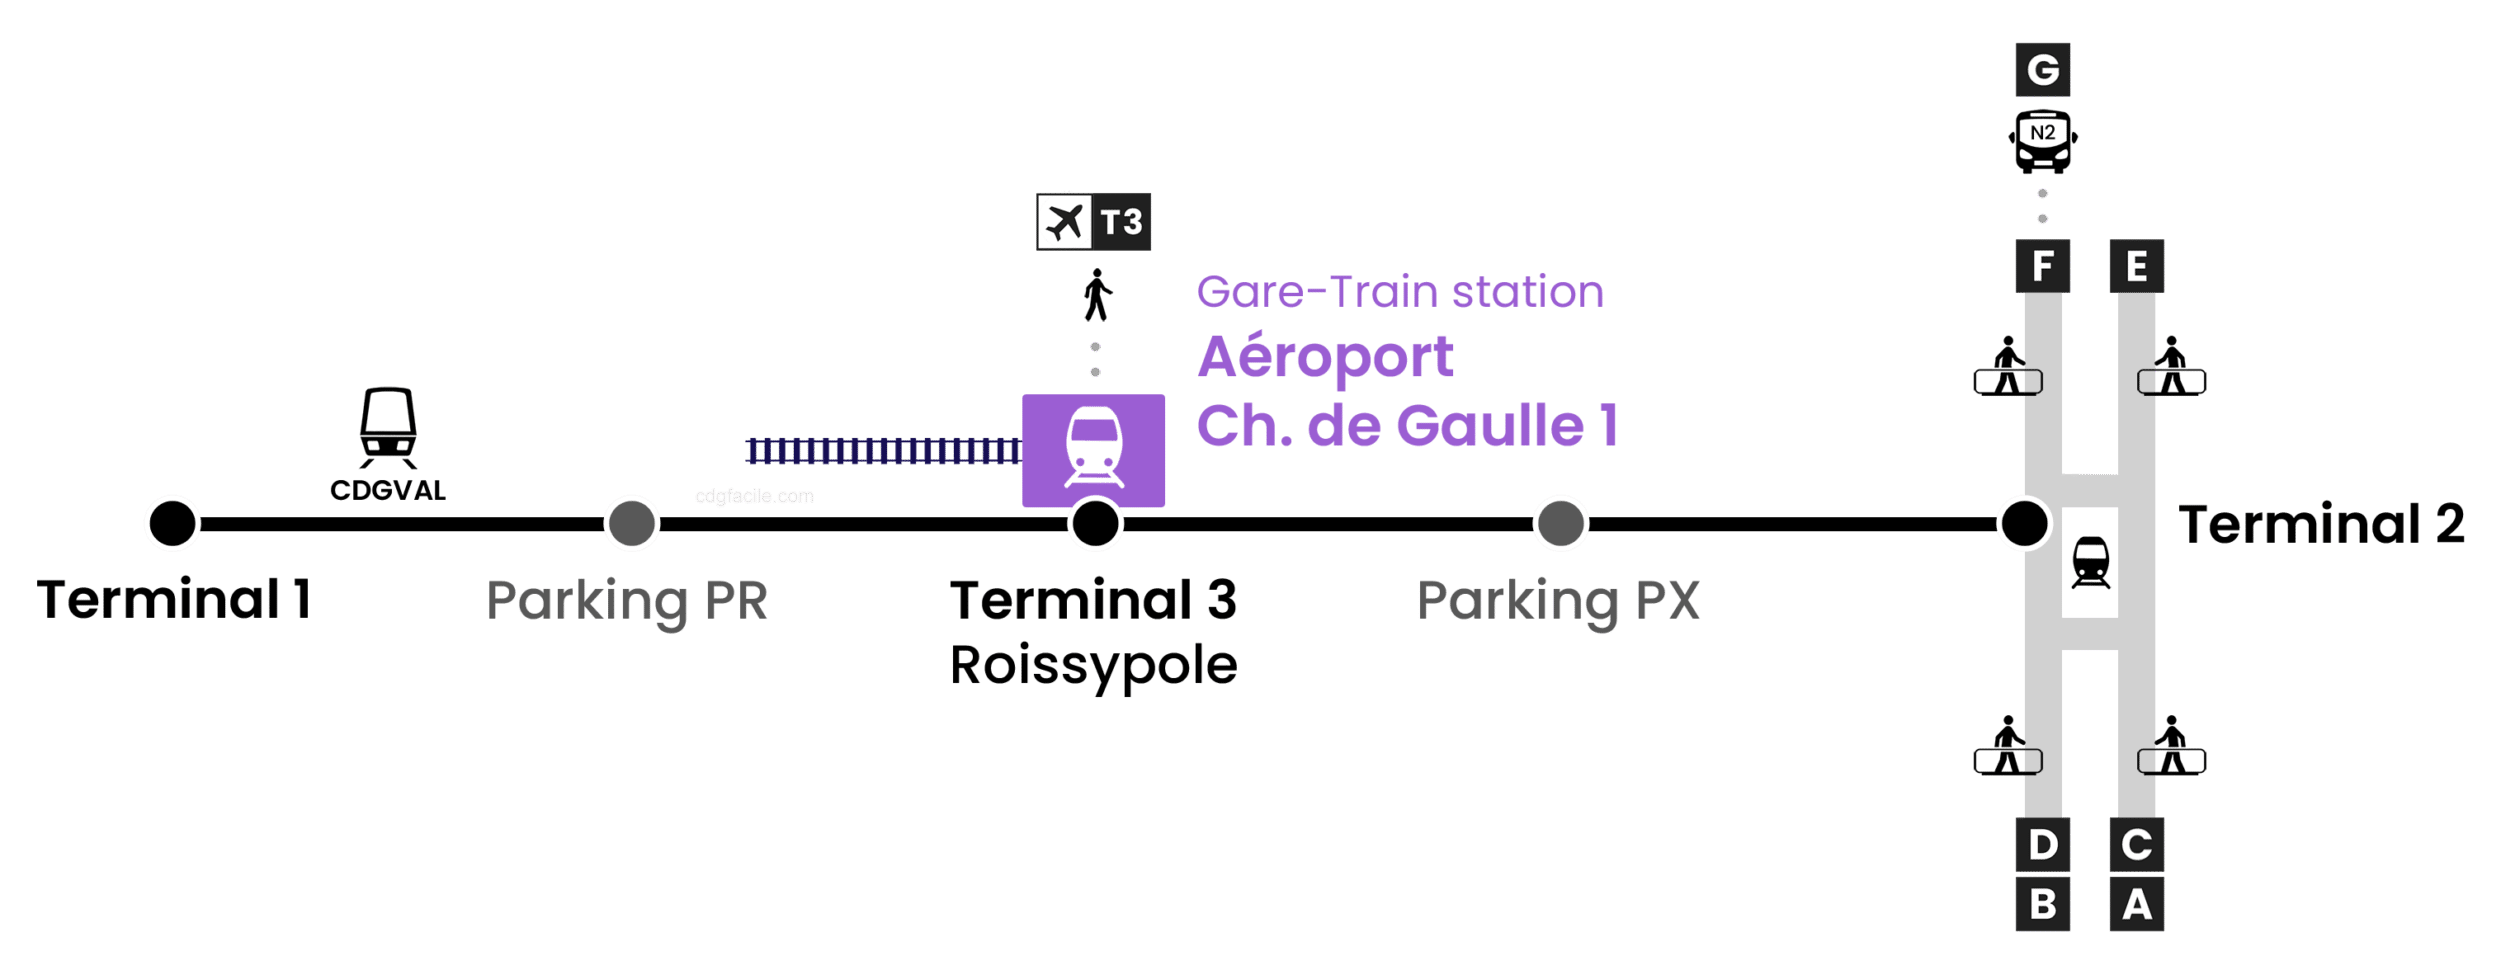 Charles de gaulle airport map - Paris cdg airport map (Île-de